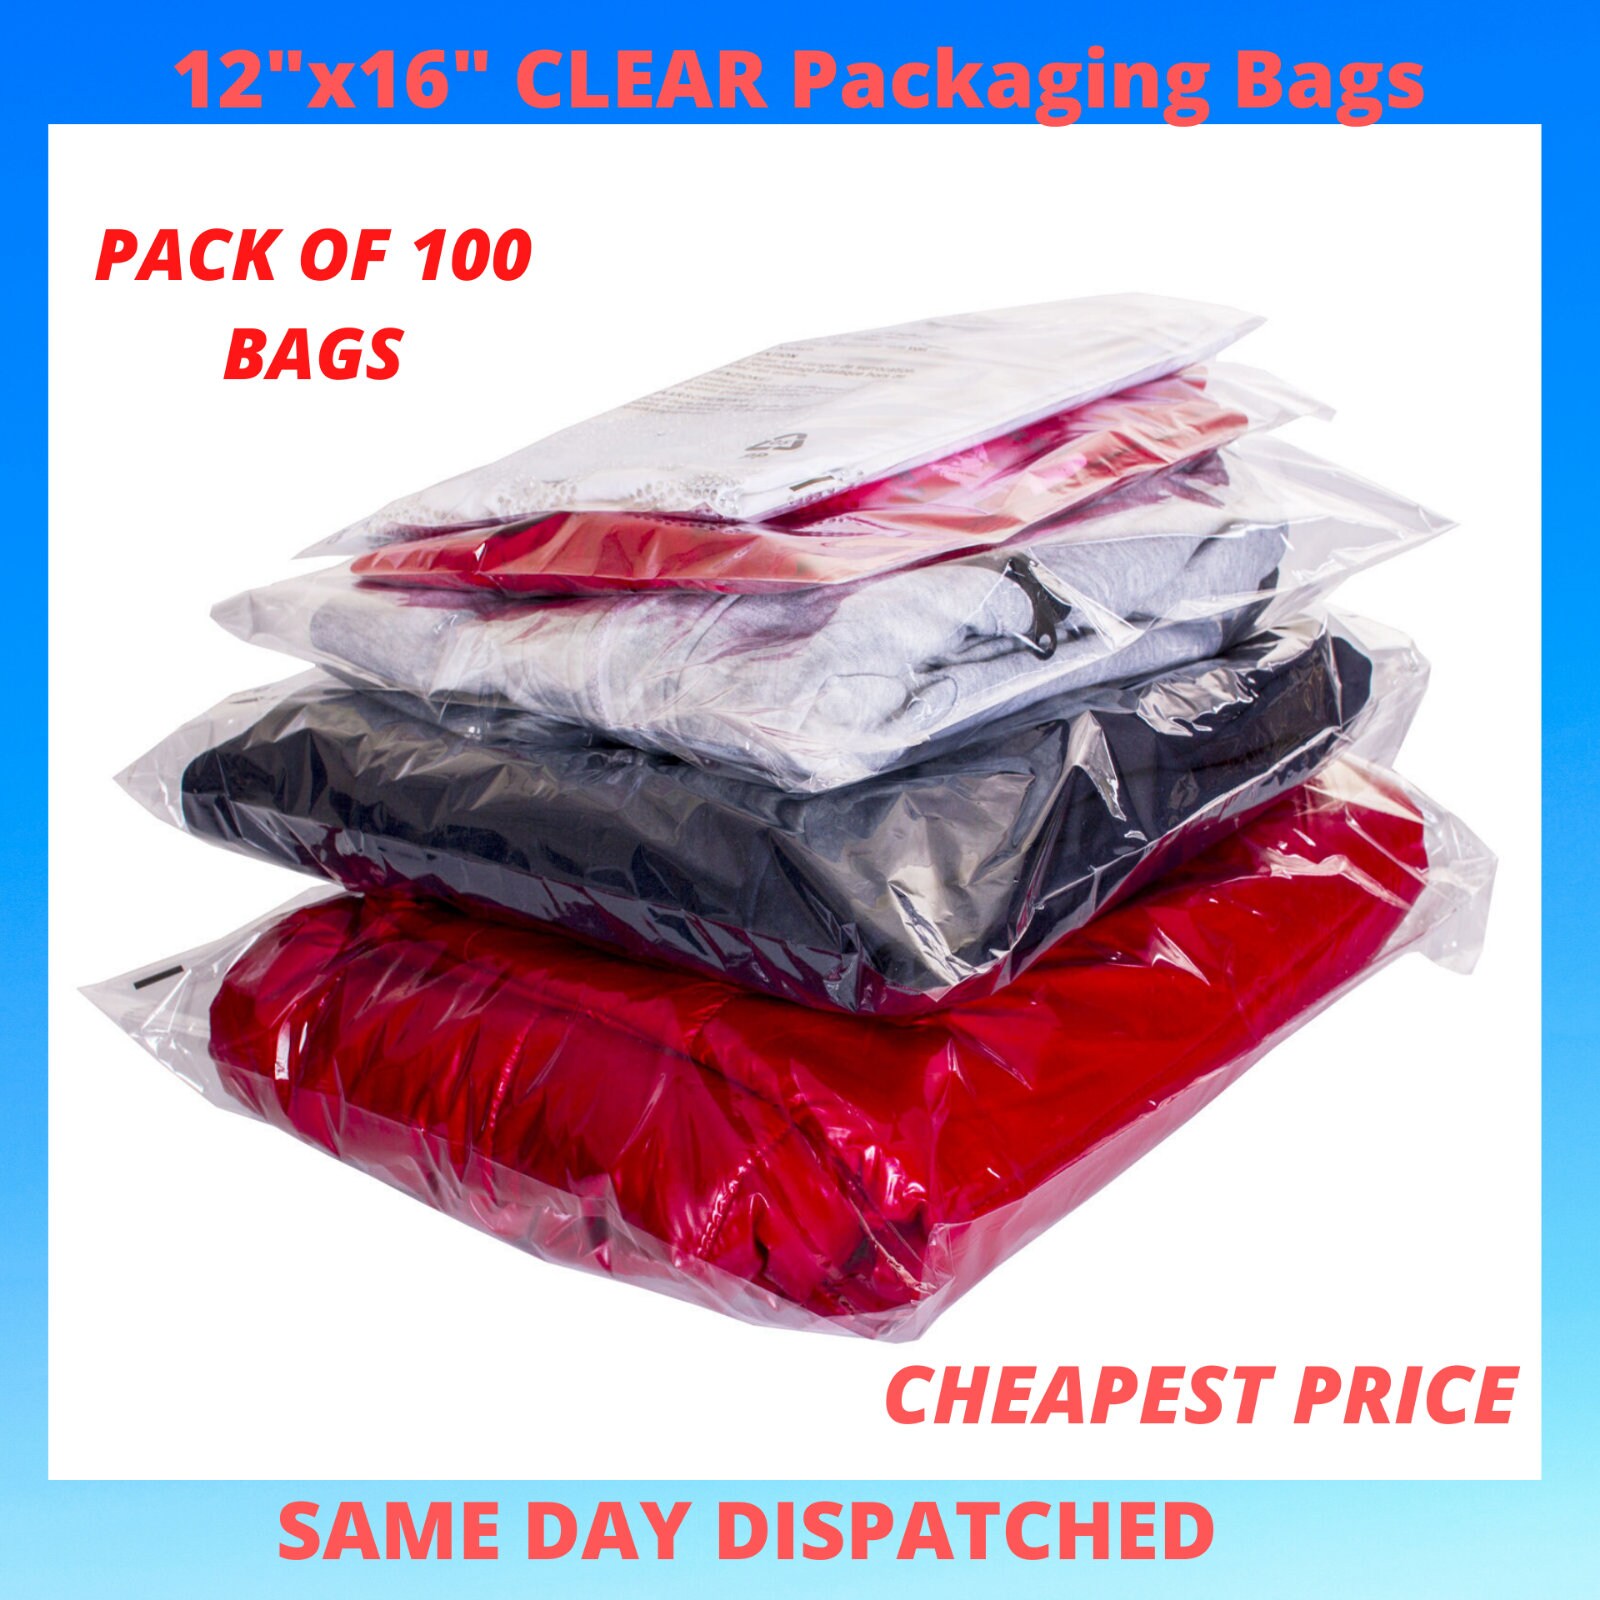 Упаковка товара на вб. Пакеты opp Bag. Opp Cellophane Bags. Пакеты для упаковки одежды. Целлофановая упаковка для одежды.